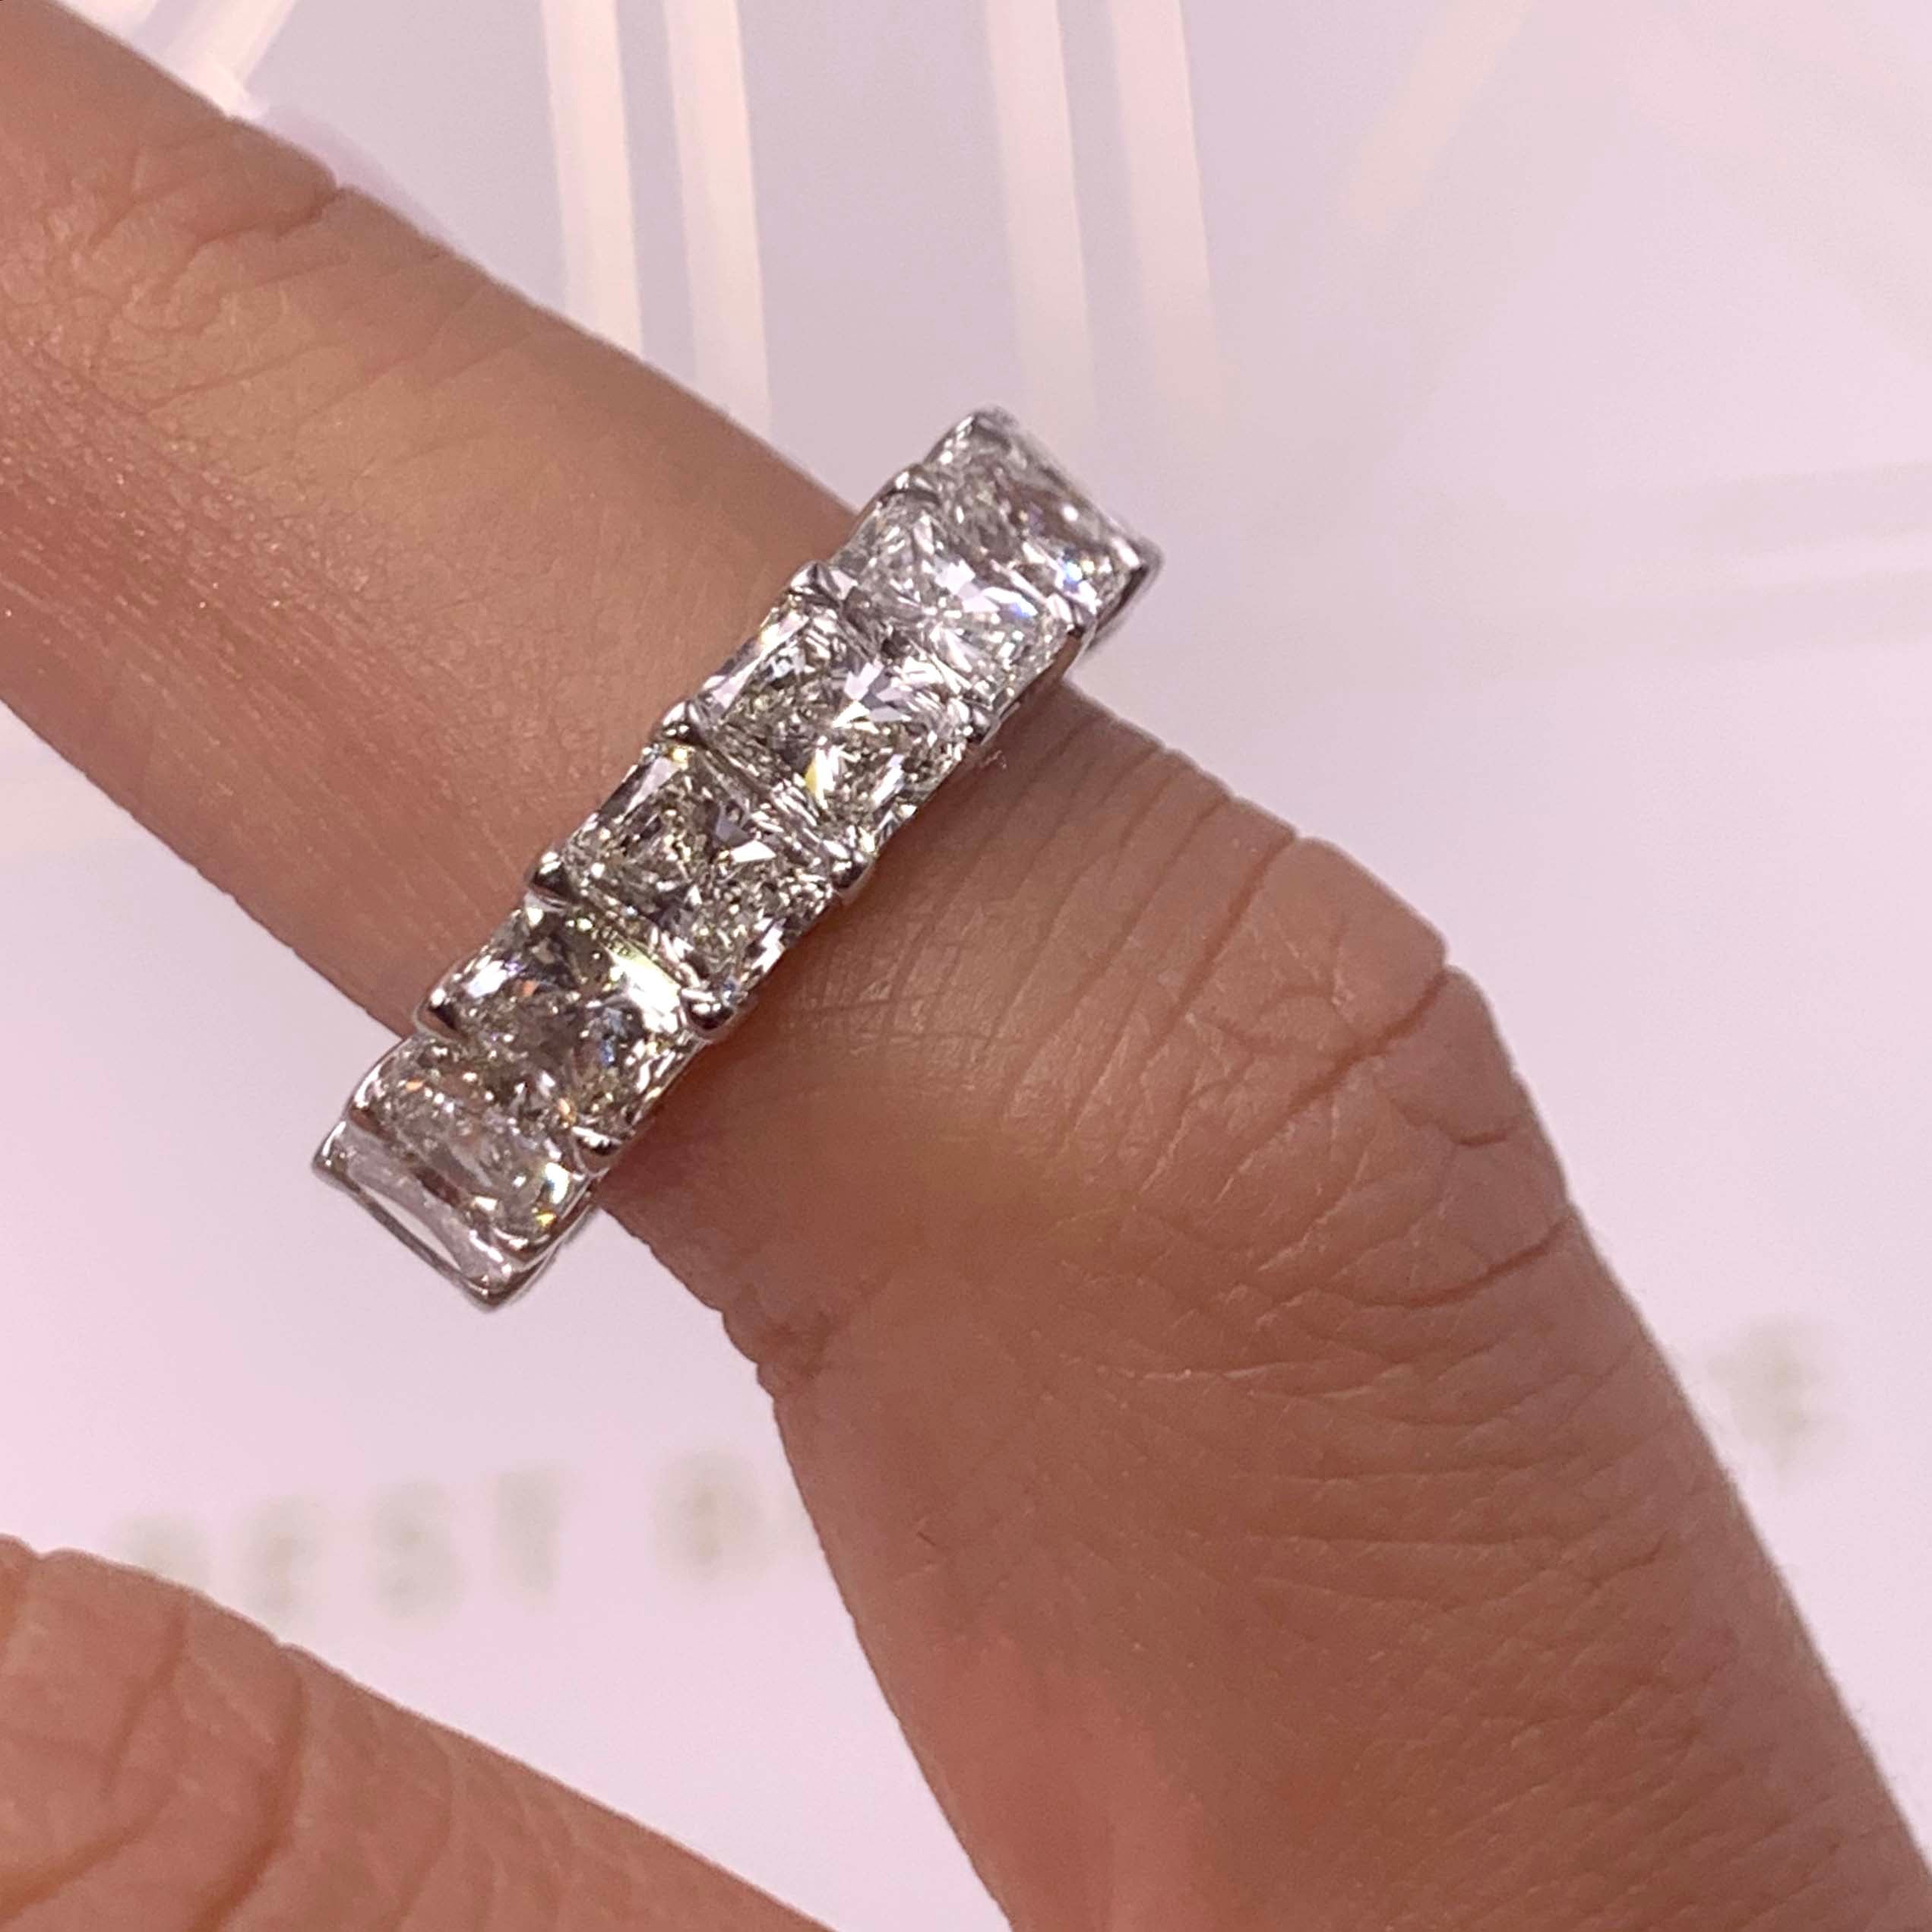 Andi Eternity Wedding Ring - 18K White Gold